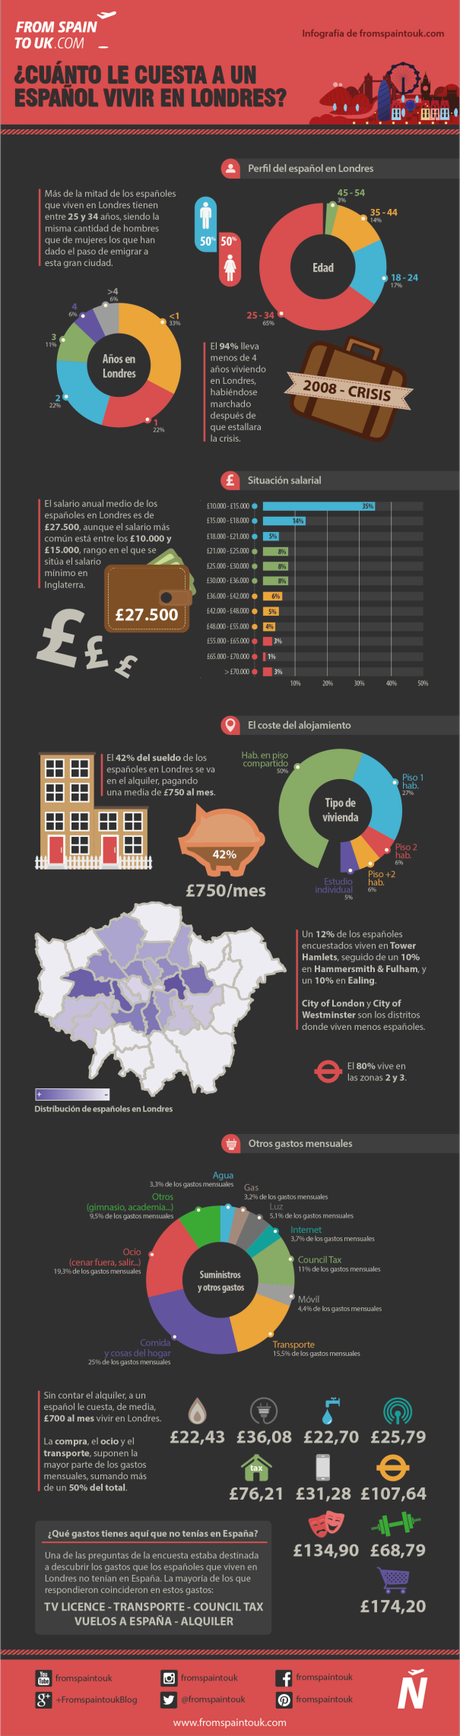 ¿Cuánto le cuesta a un español vivir en Londres?